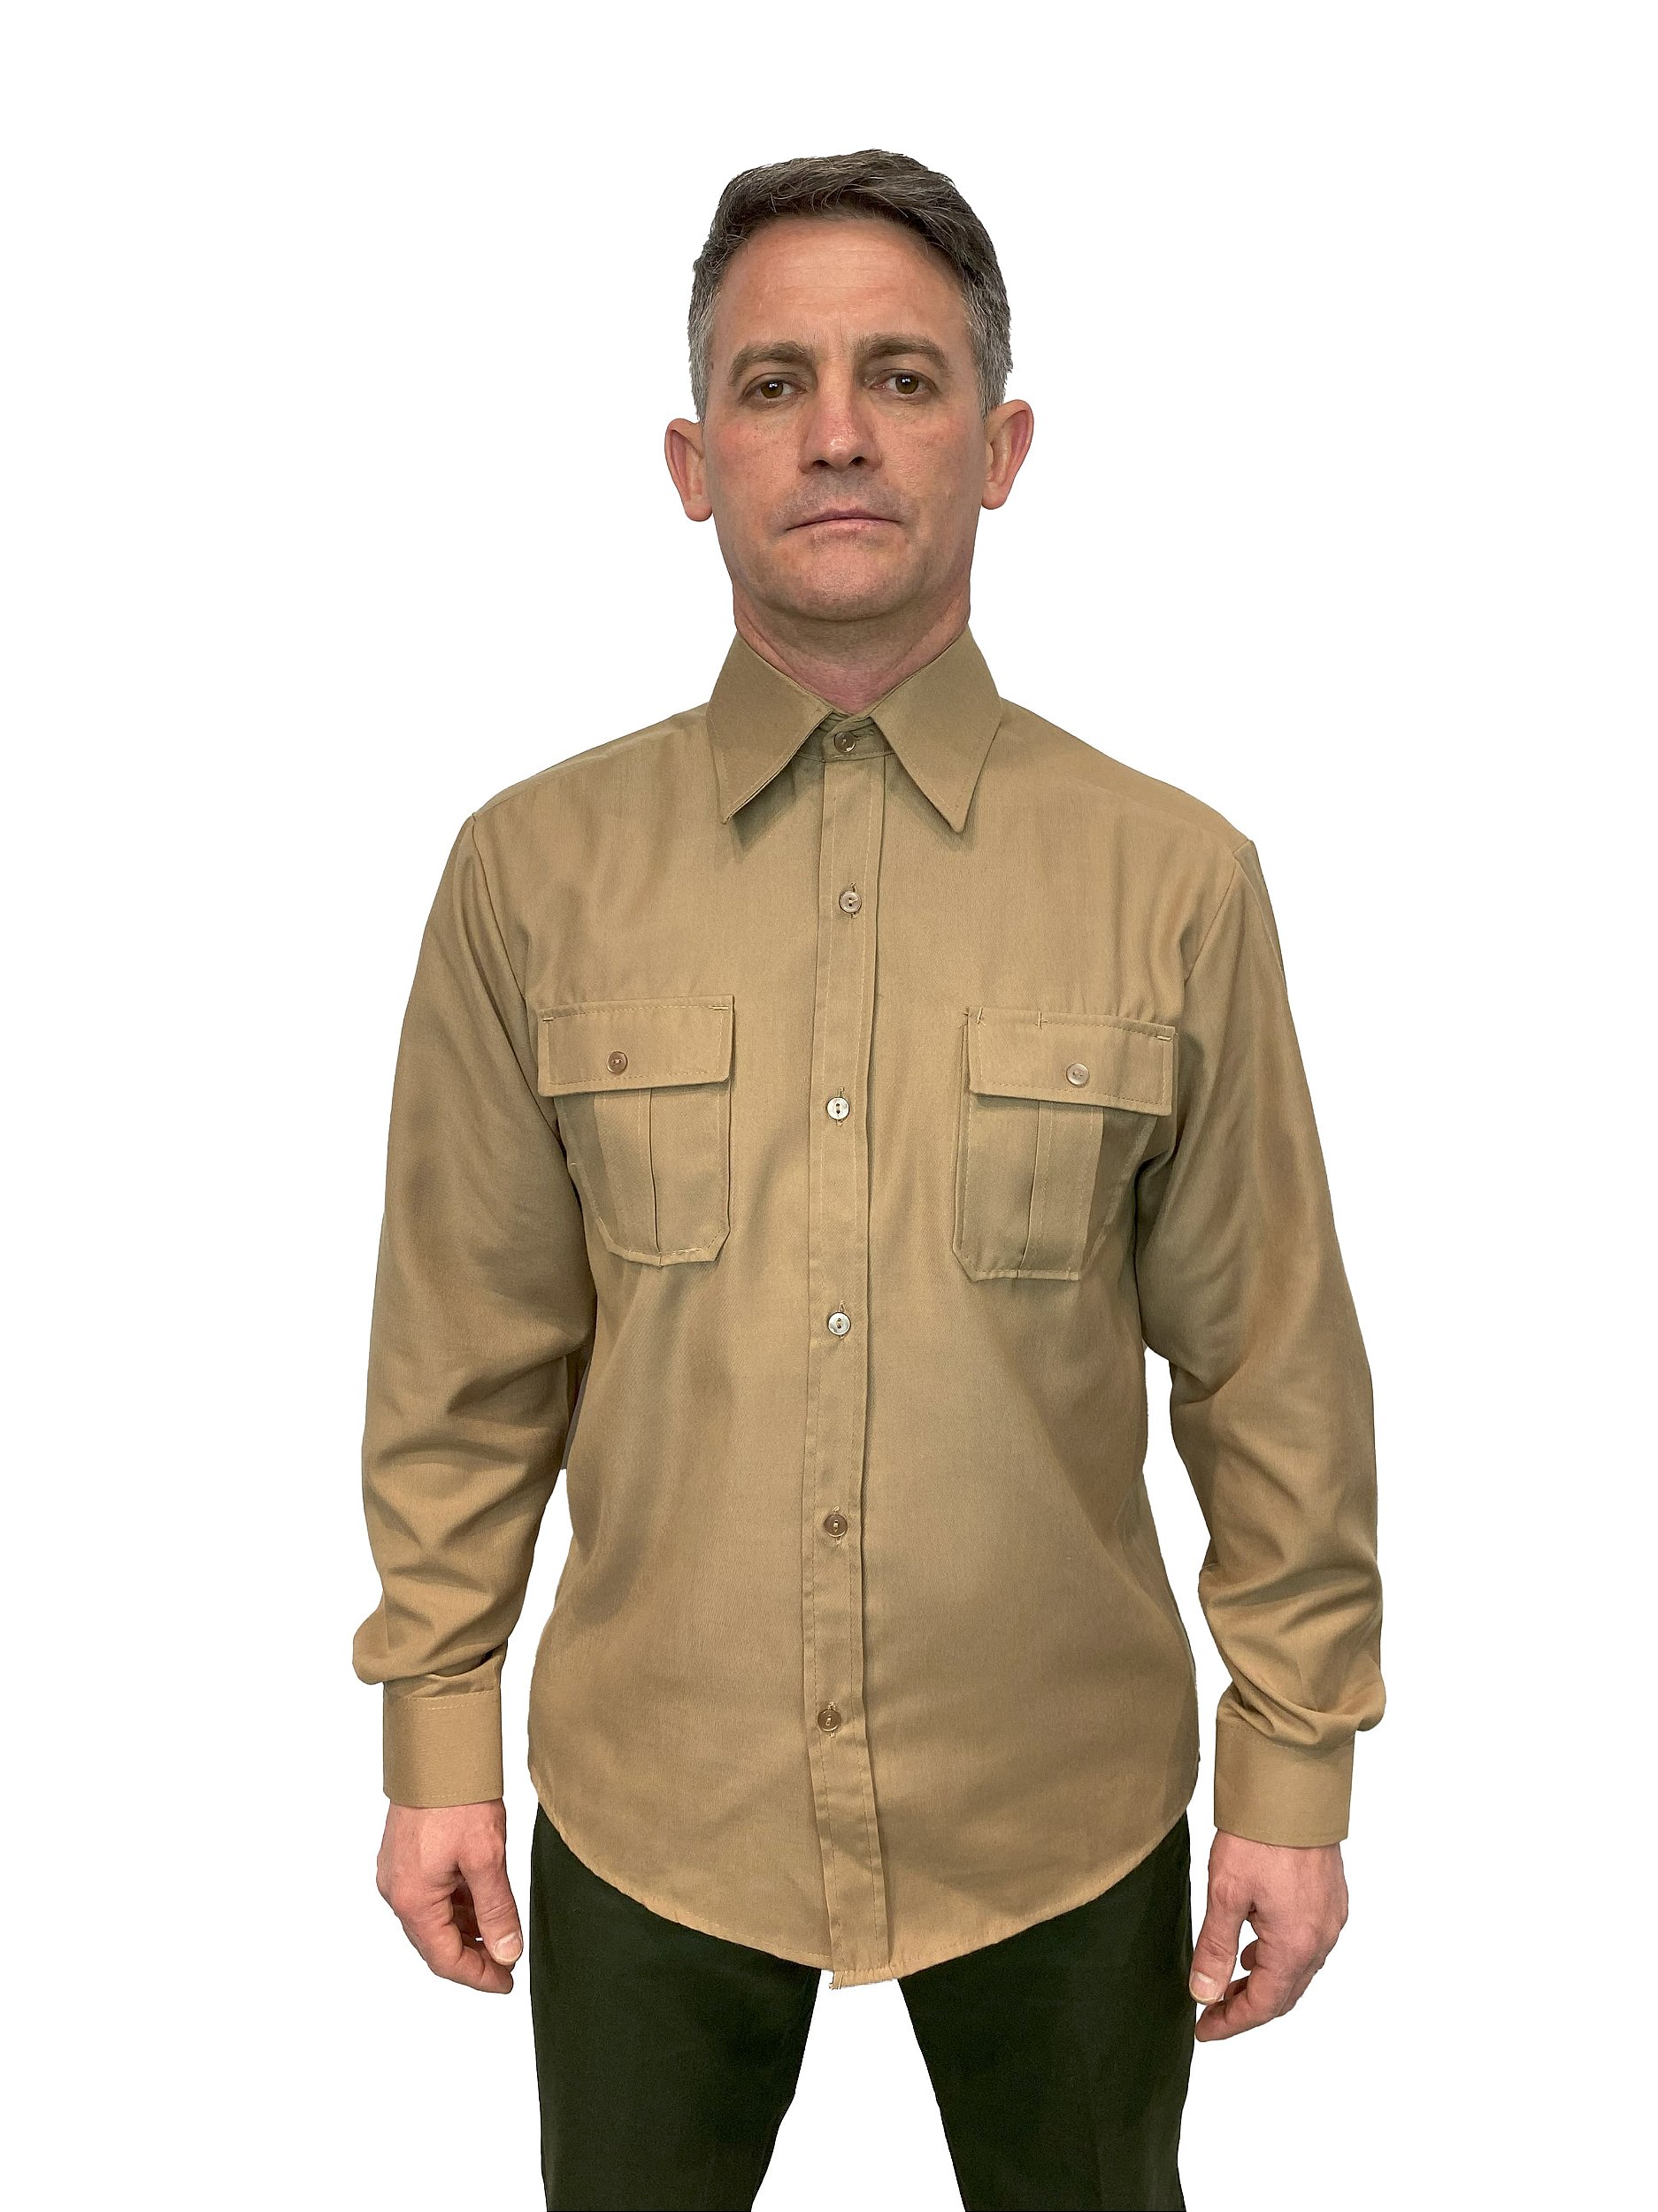 Camisa Bege Exercito Manga Longa - Artigos Militares, Fardas, Uniformes  Militares, Fardas Militares